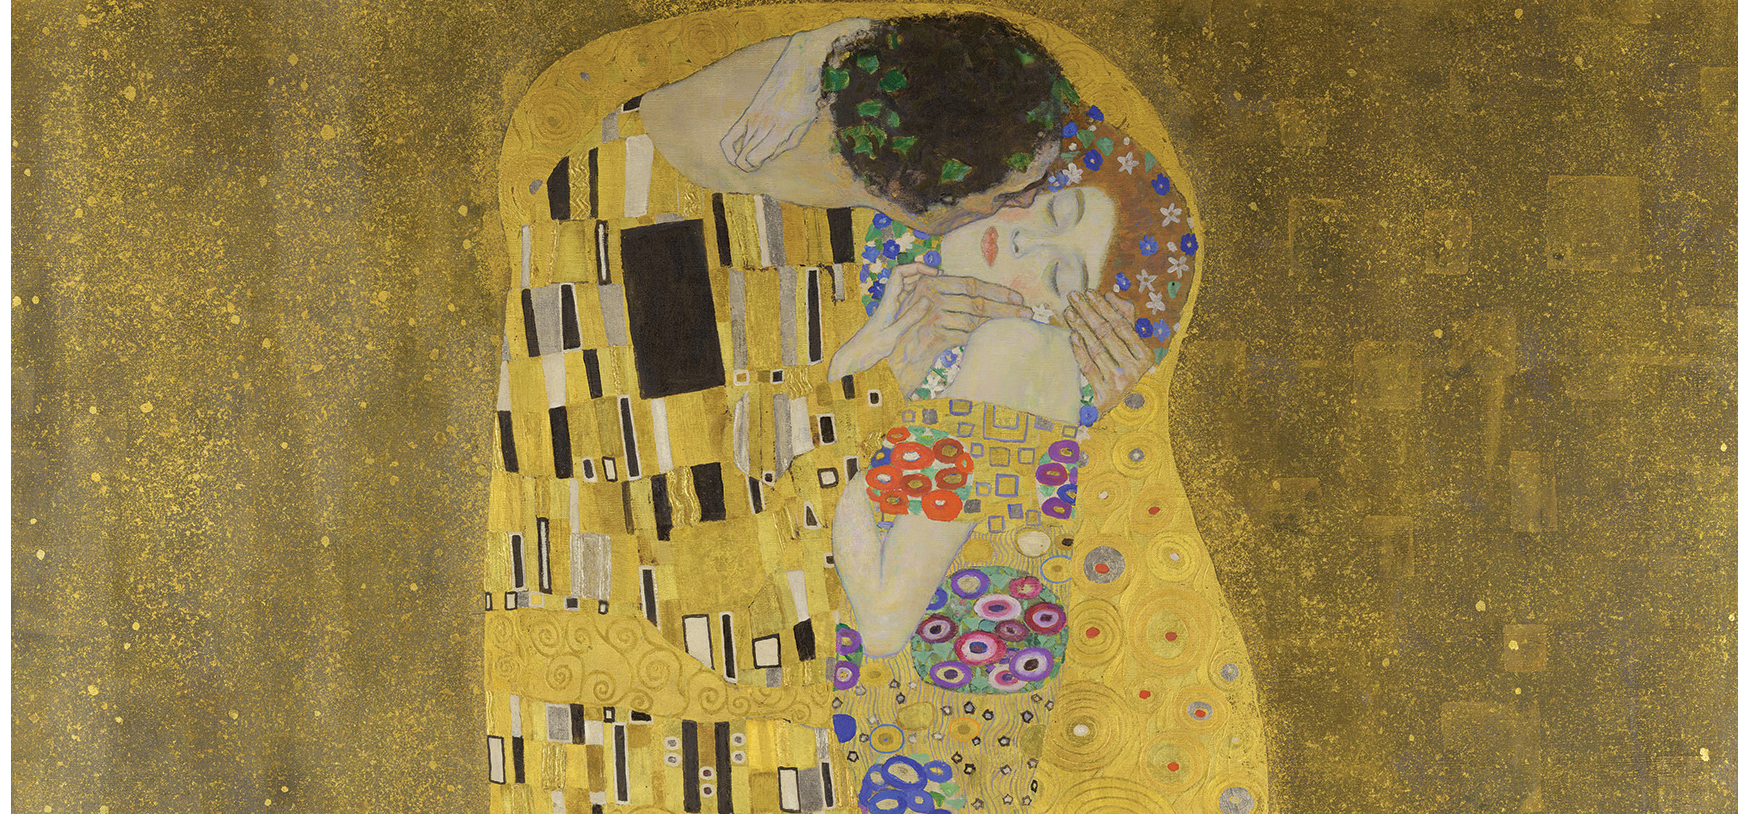 Qustav Klimt